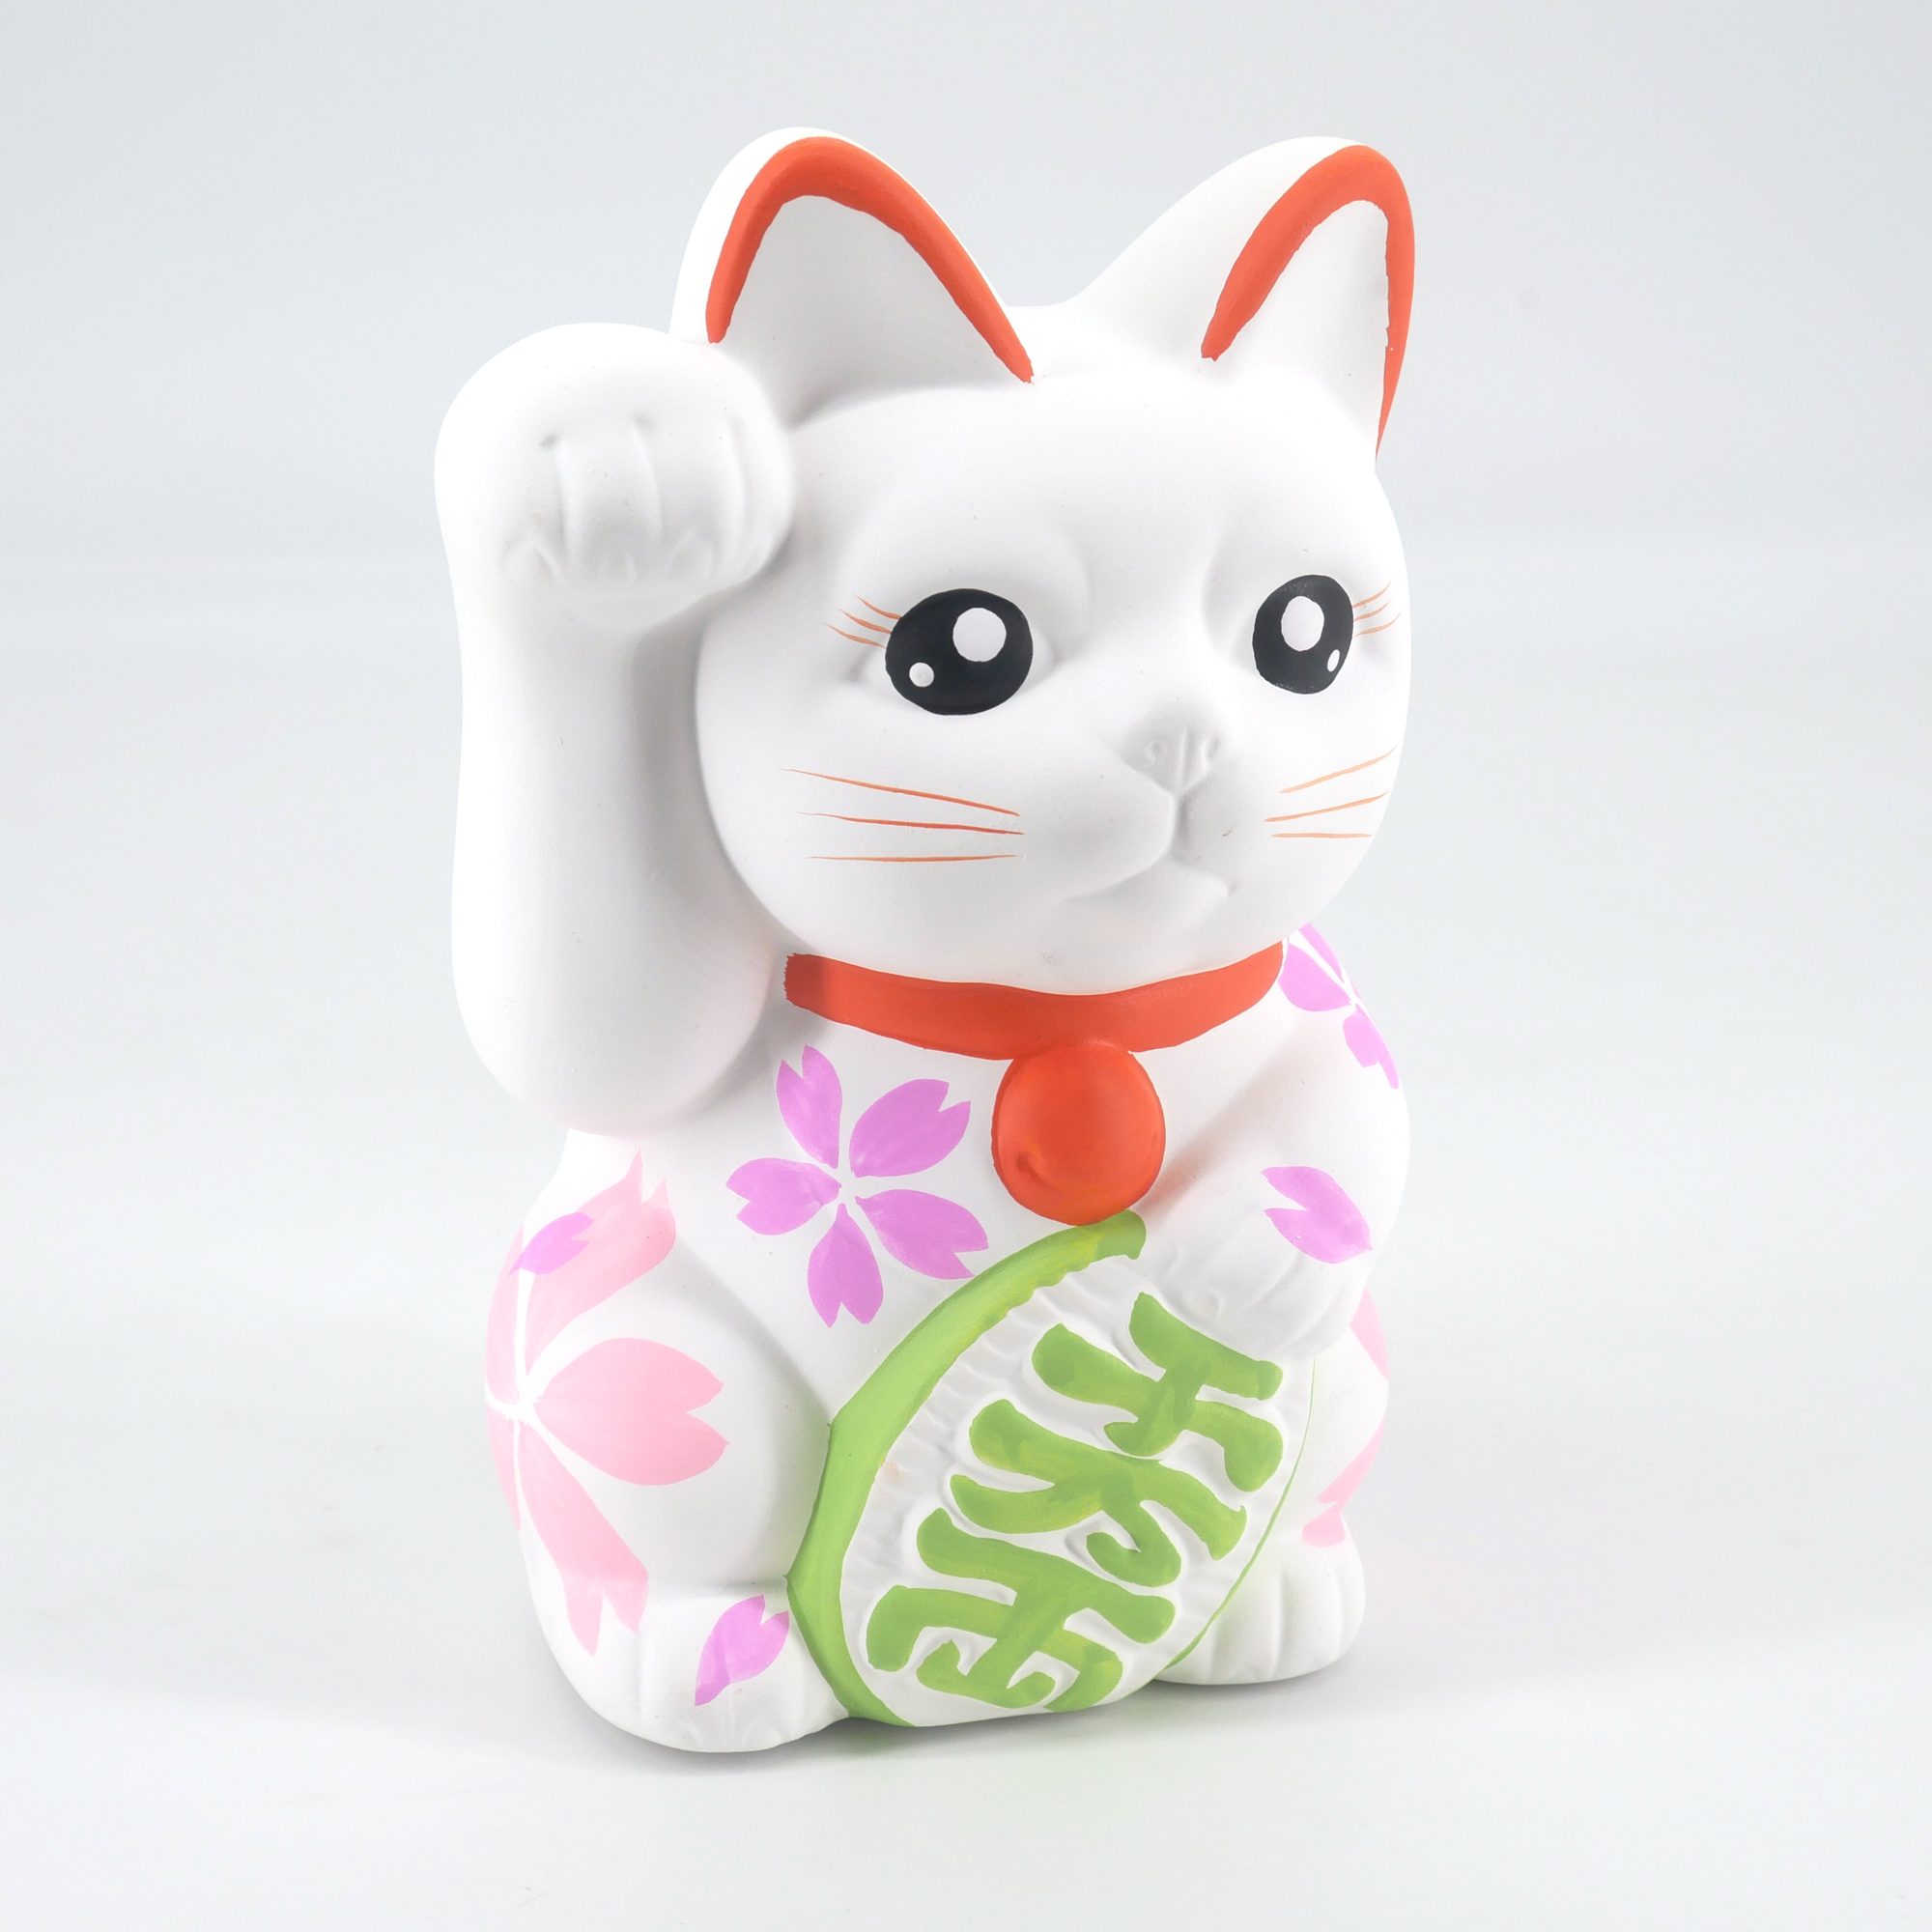 Maneki Neko chat porte bonheur japonais Blanc' Mug